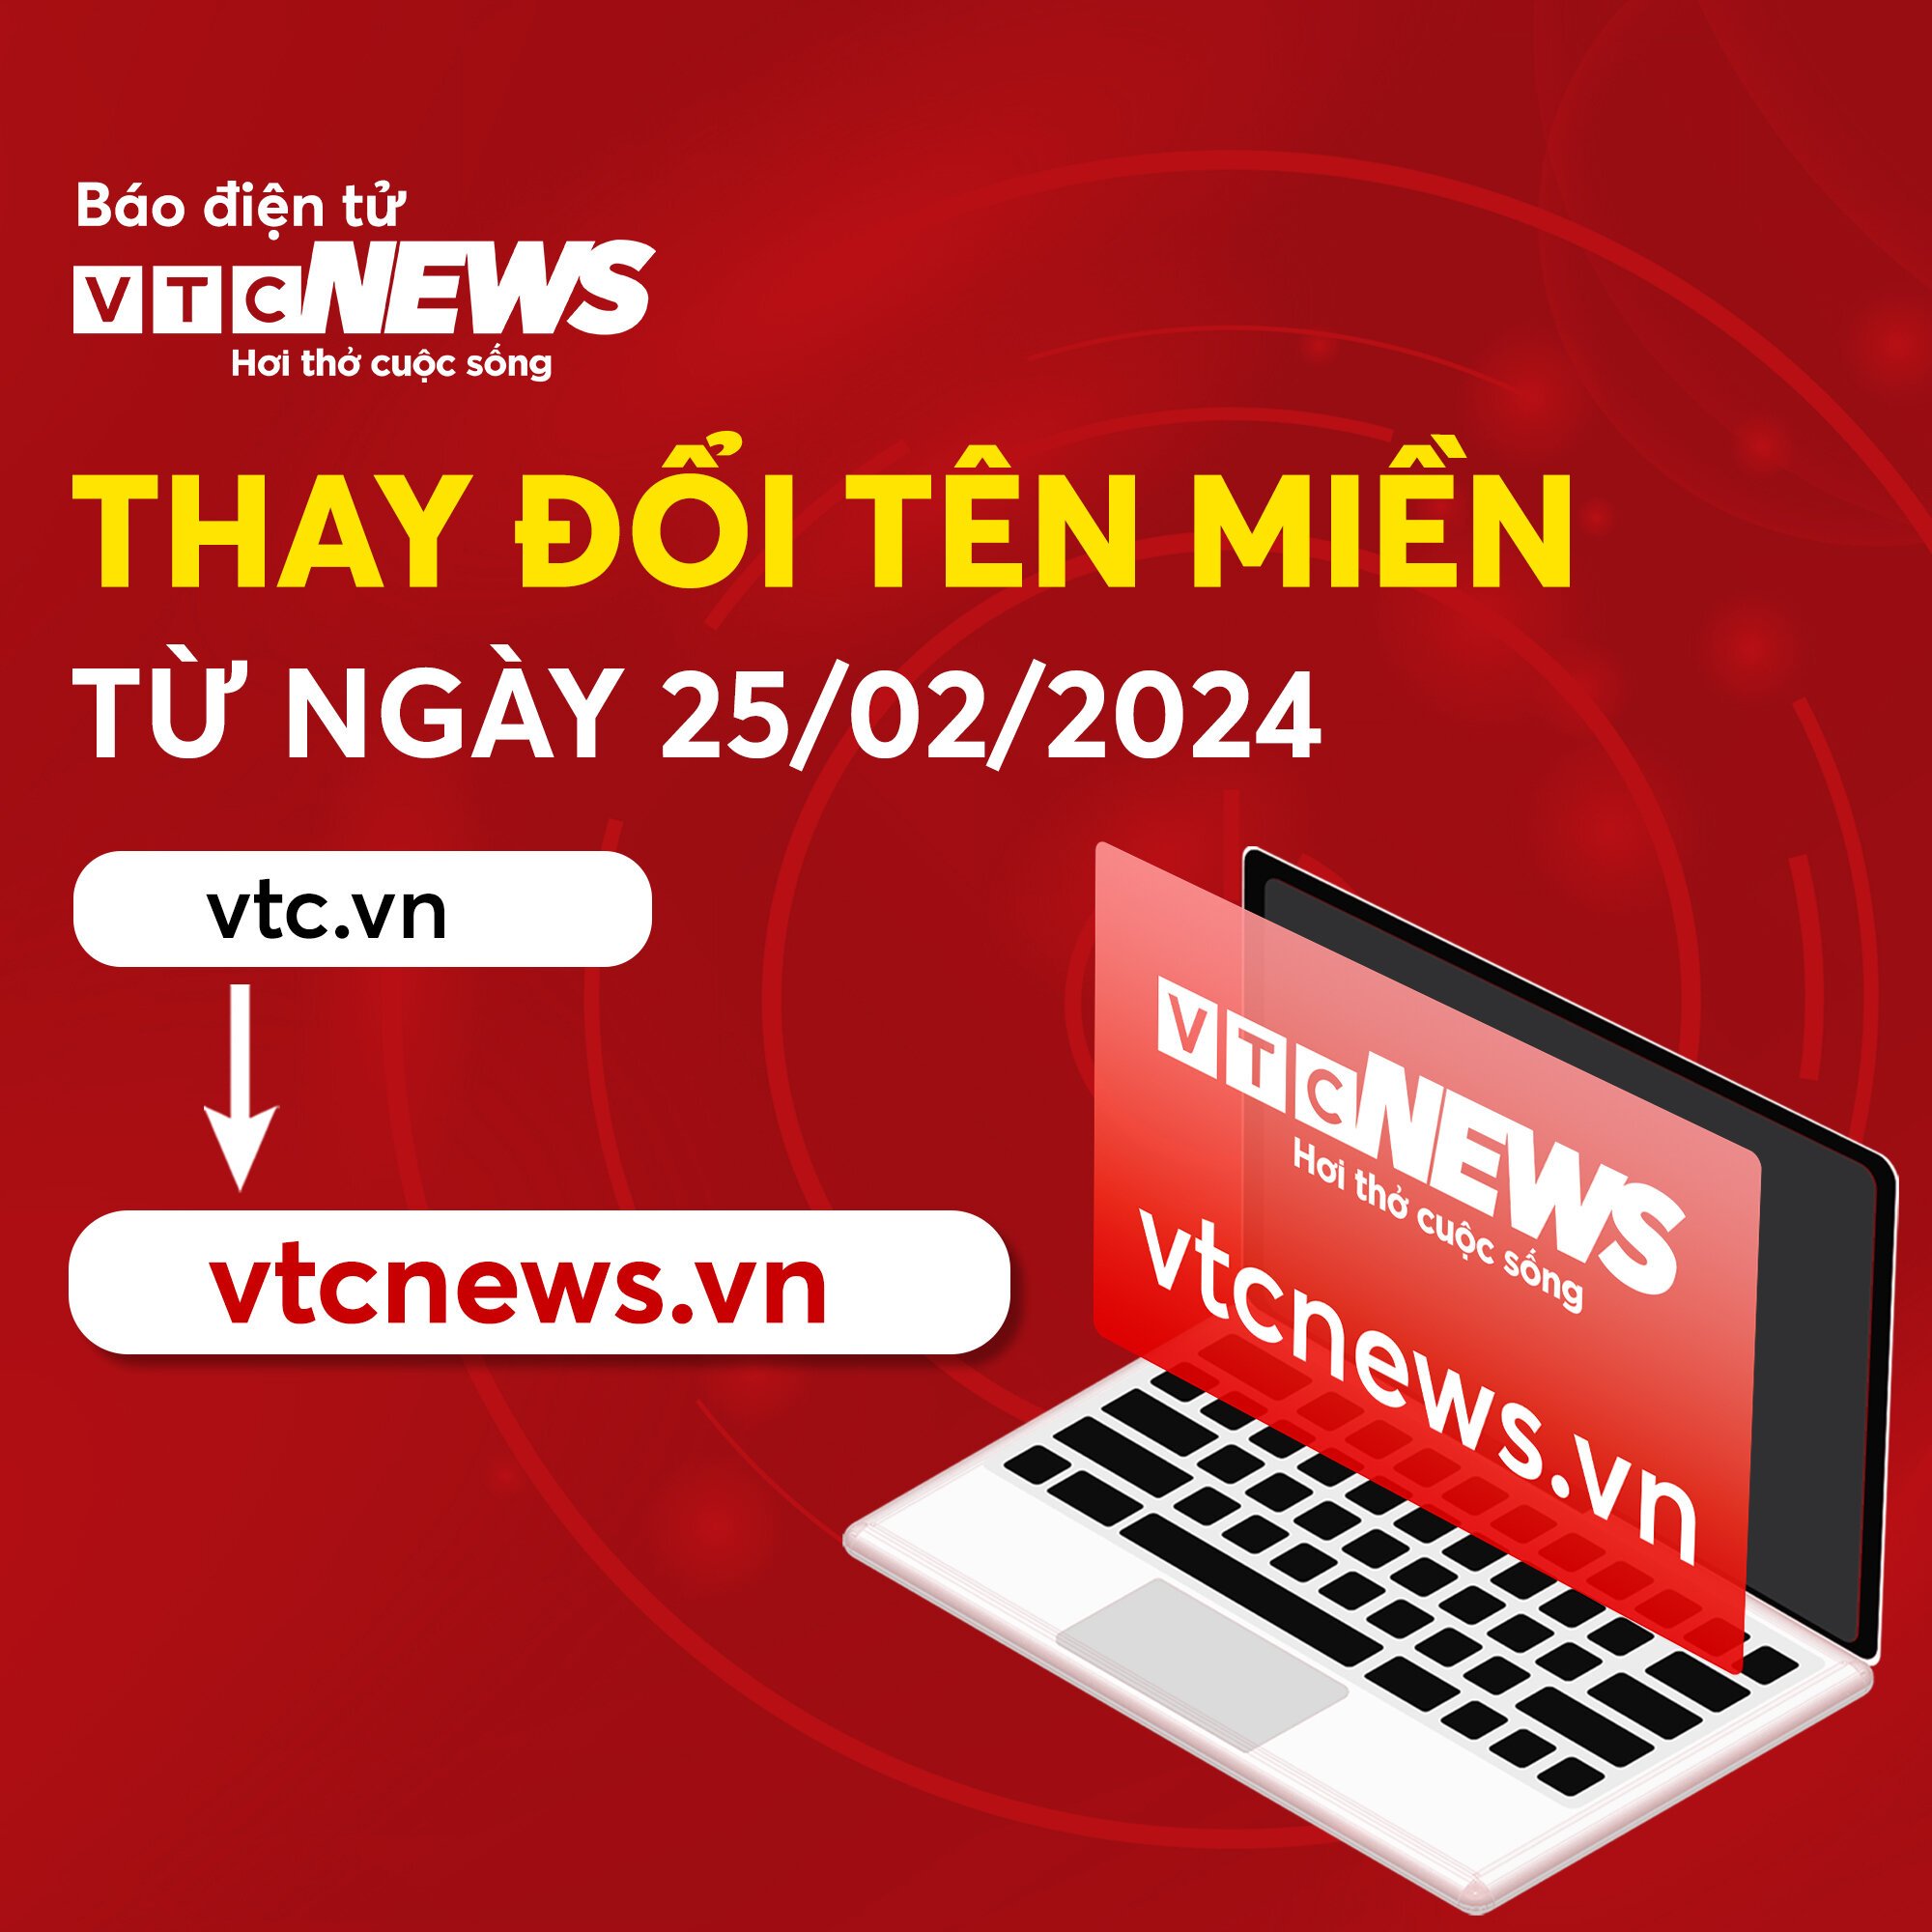 Báo điện tử VTC News đổi tên miền vtc.vn sang vtcnews.vn- Ảnh 1.